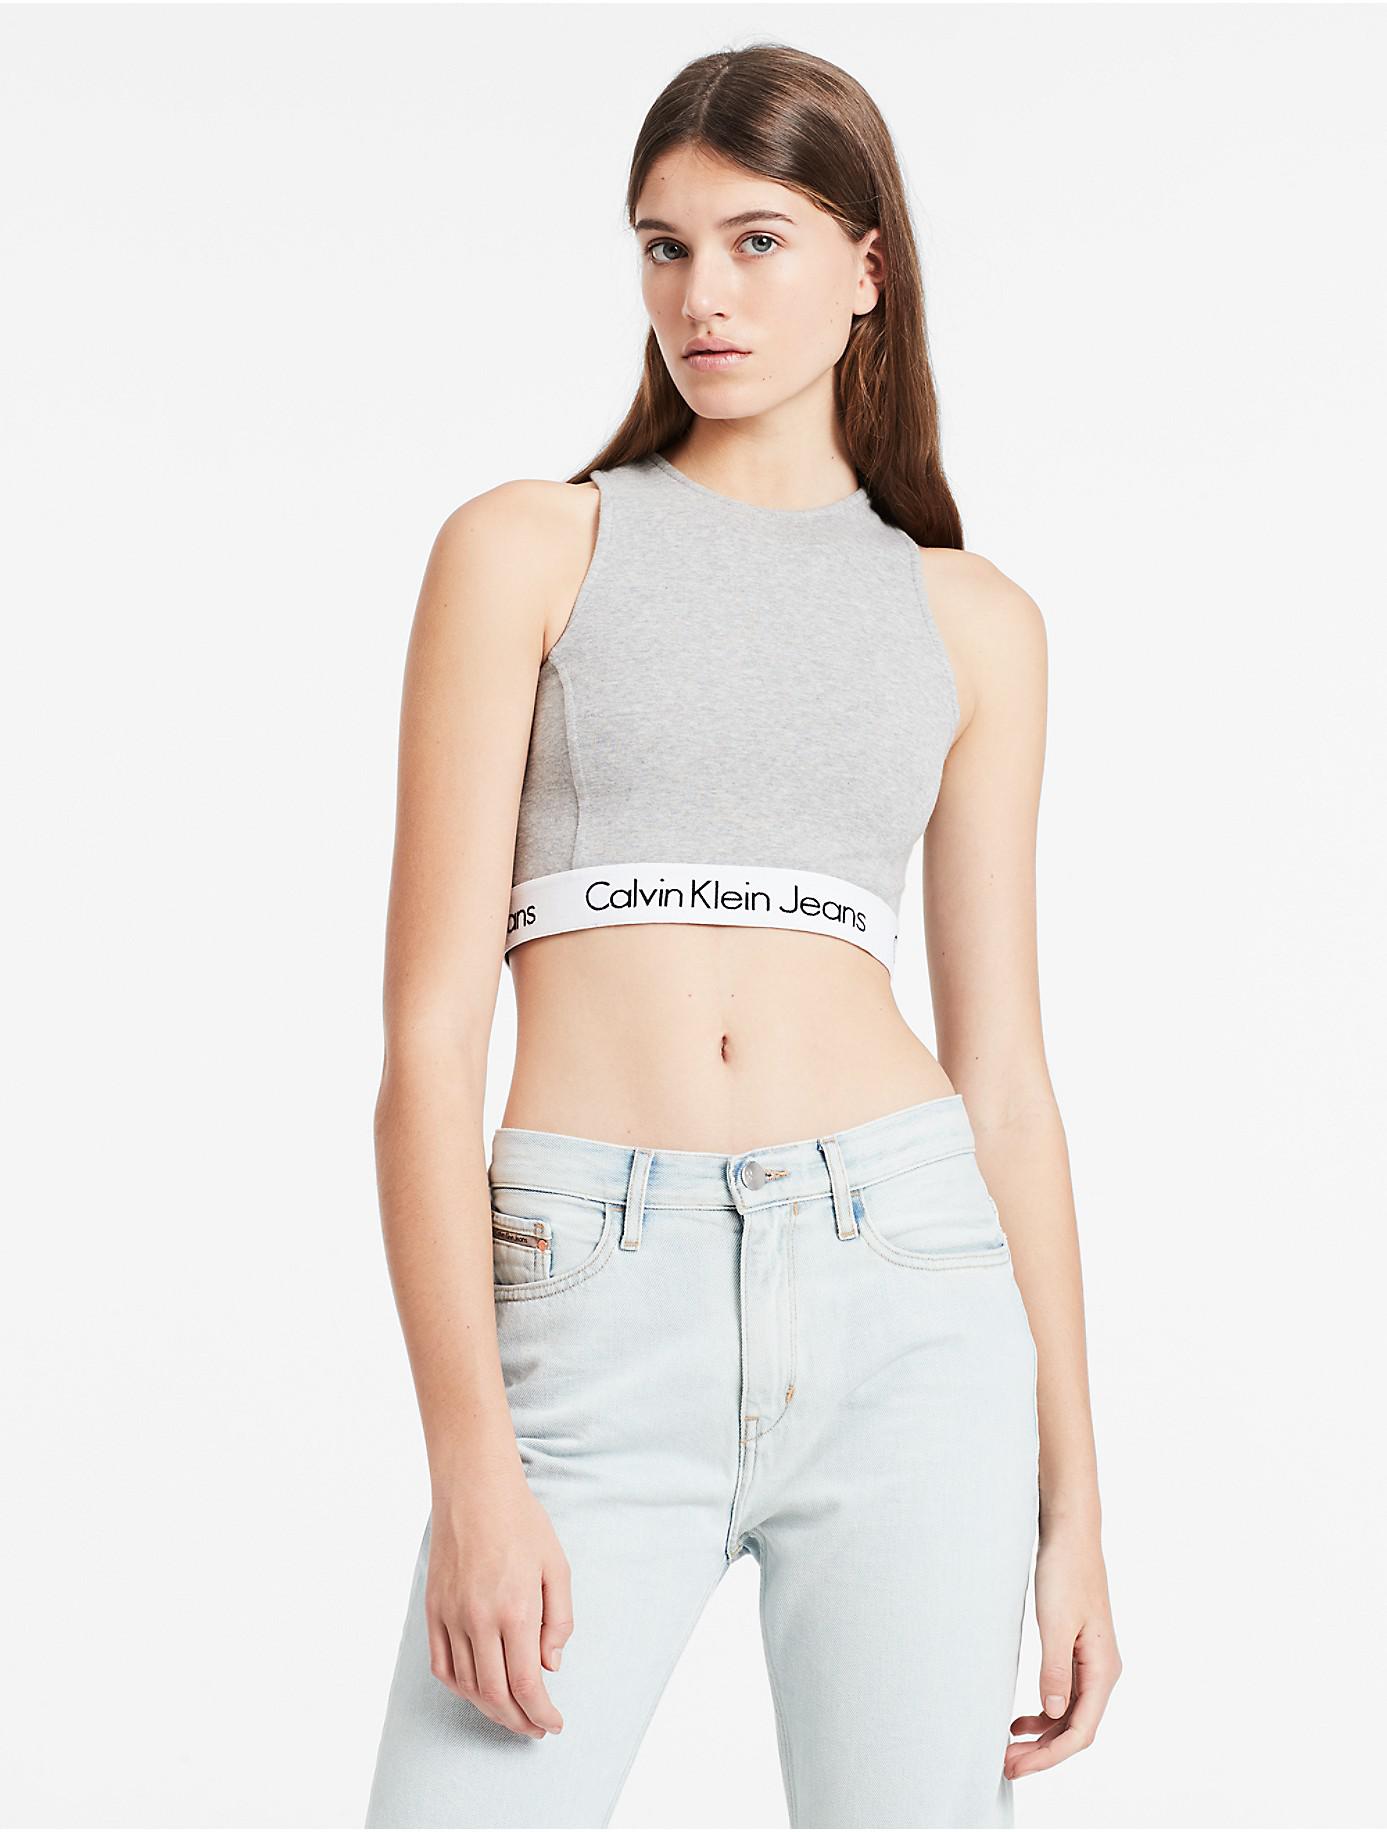 Calvin Klein Denim Jeans Halter Neck Cropped Tank Top in Grey (Gray) - Lyst